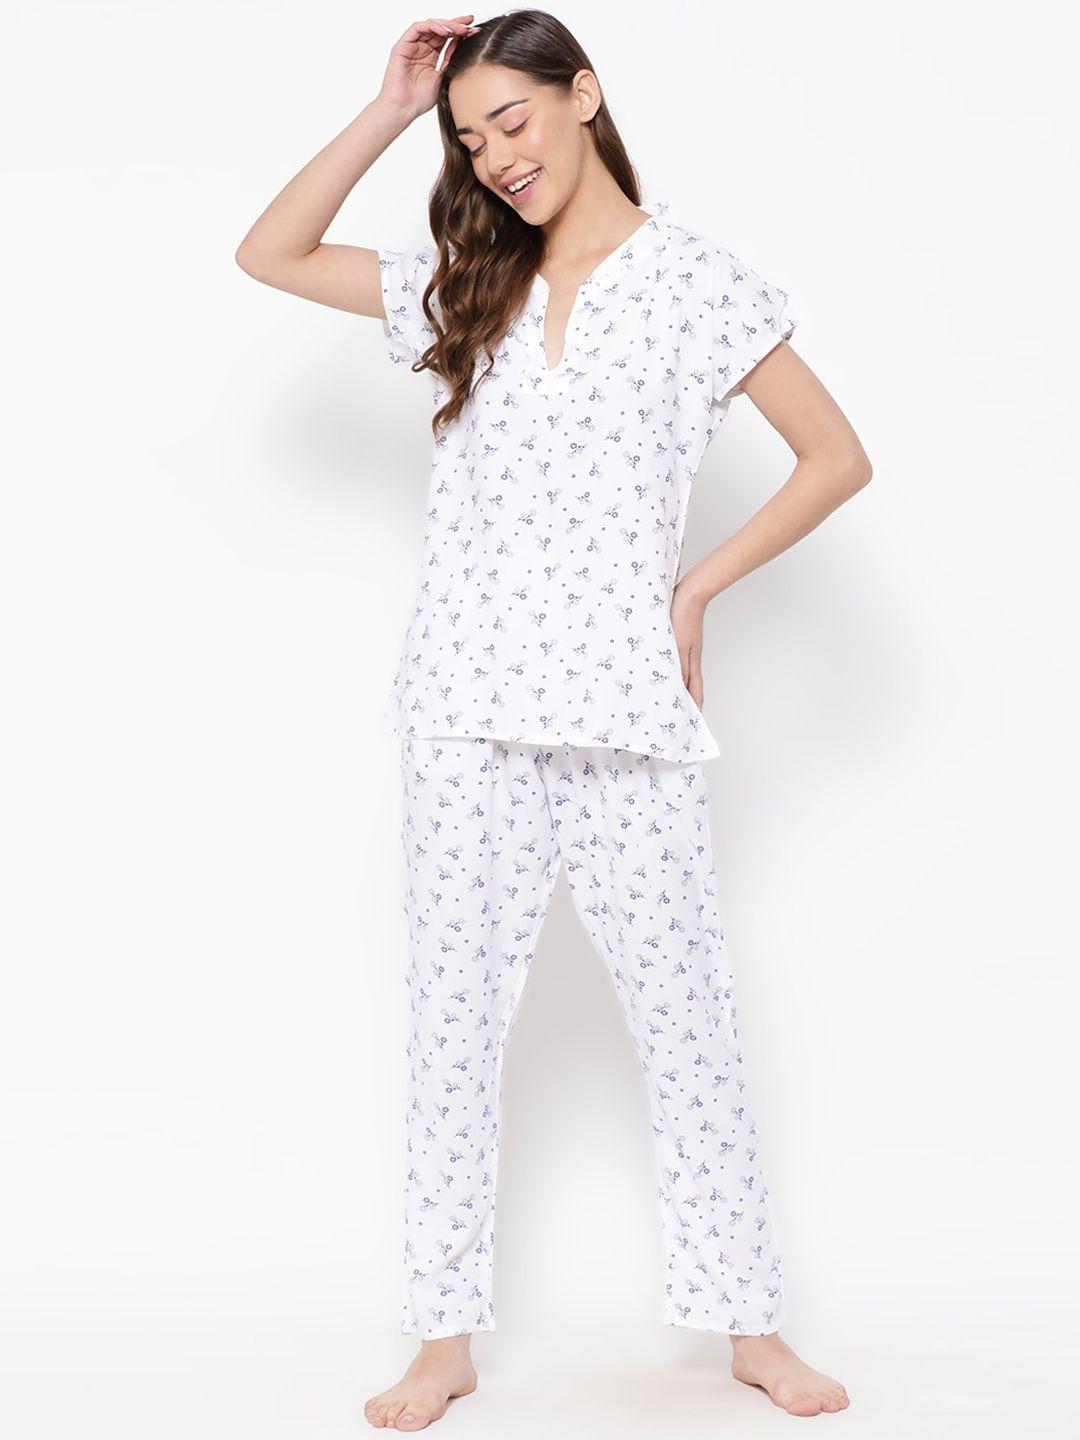 clovia-white-&-blue-conversational-printed-top-with-pyjamas